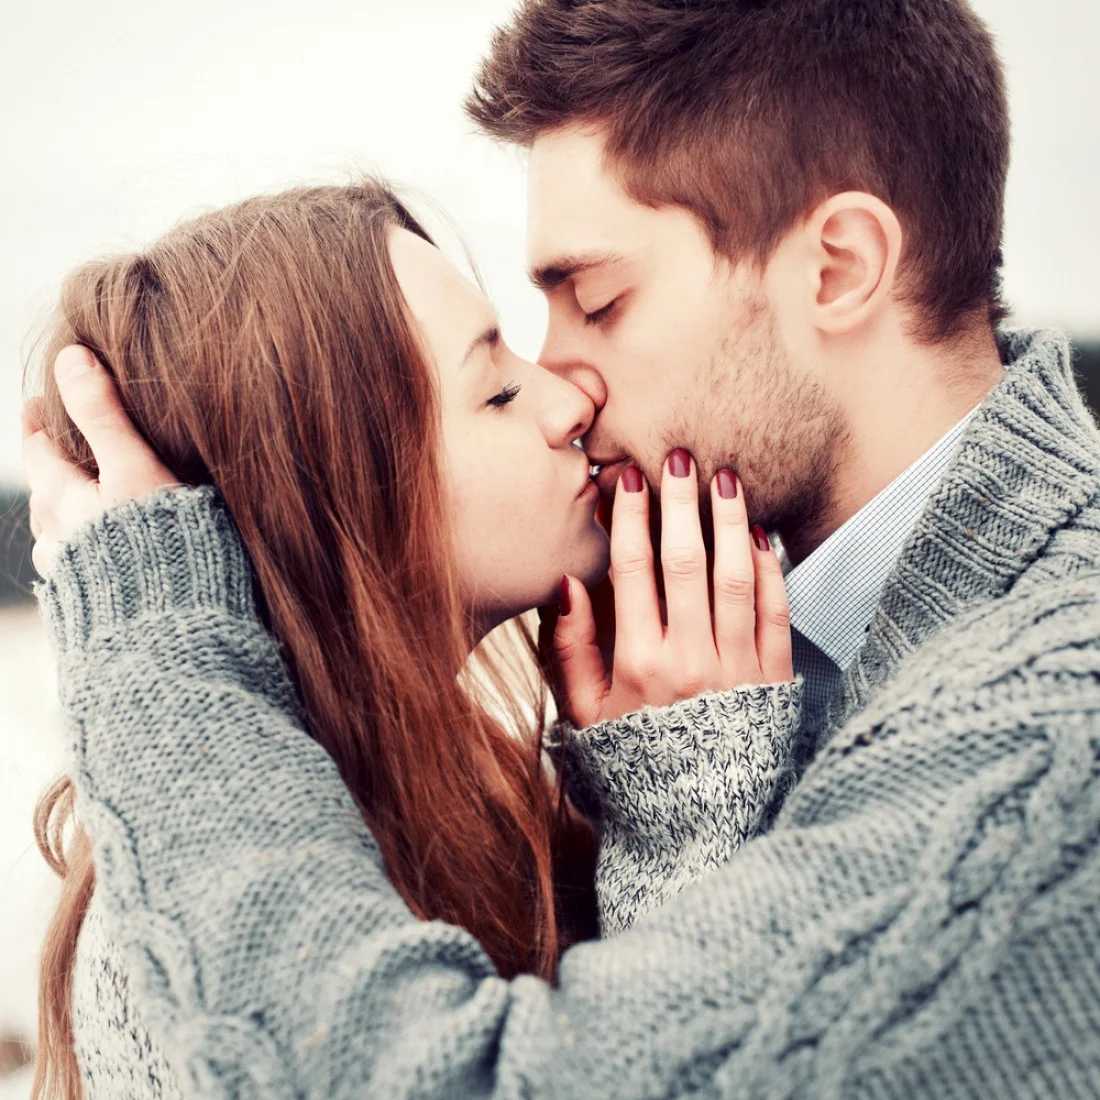 12 несподіваних фактів про поцілунки, які цікаво знати - фото 325408